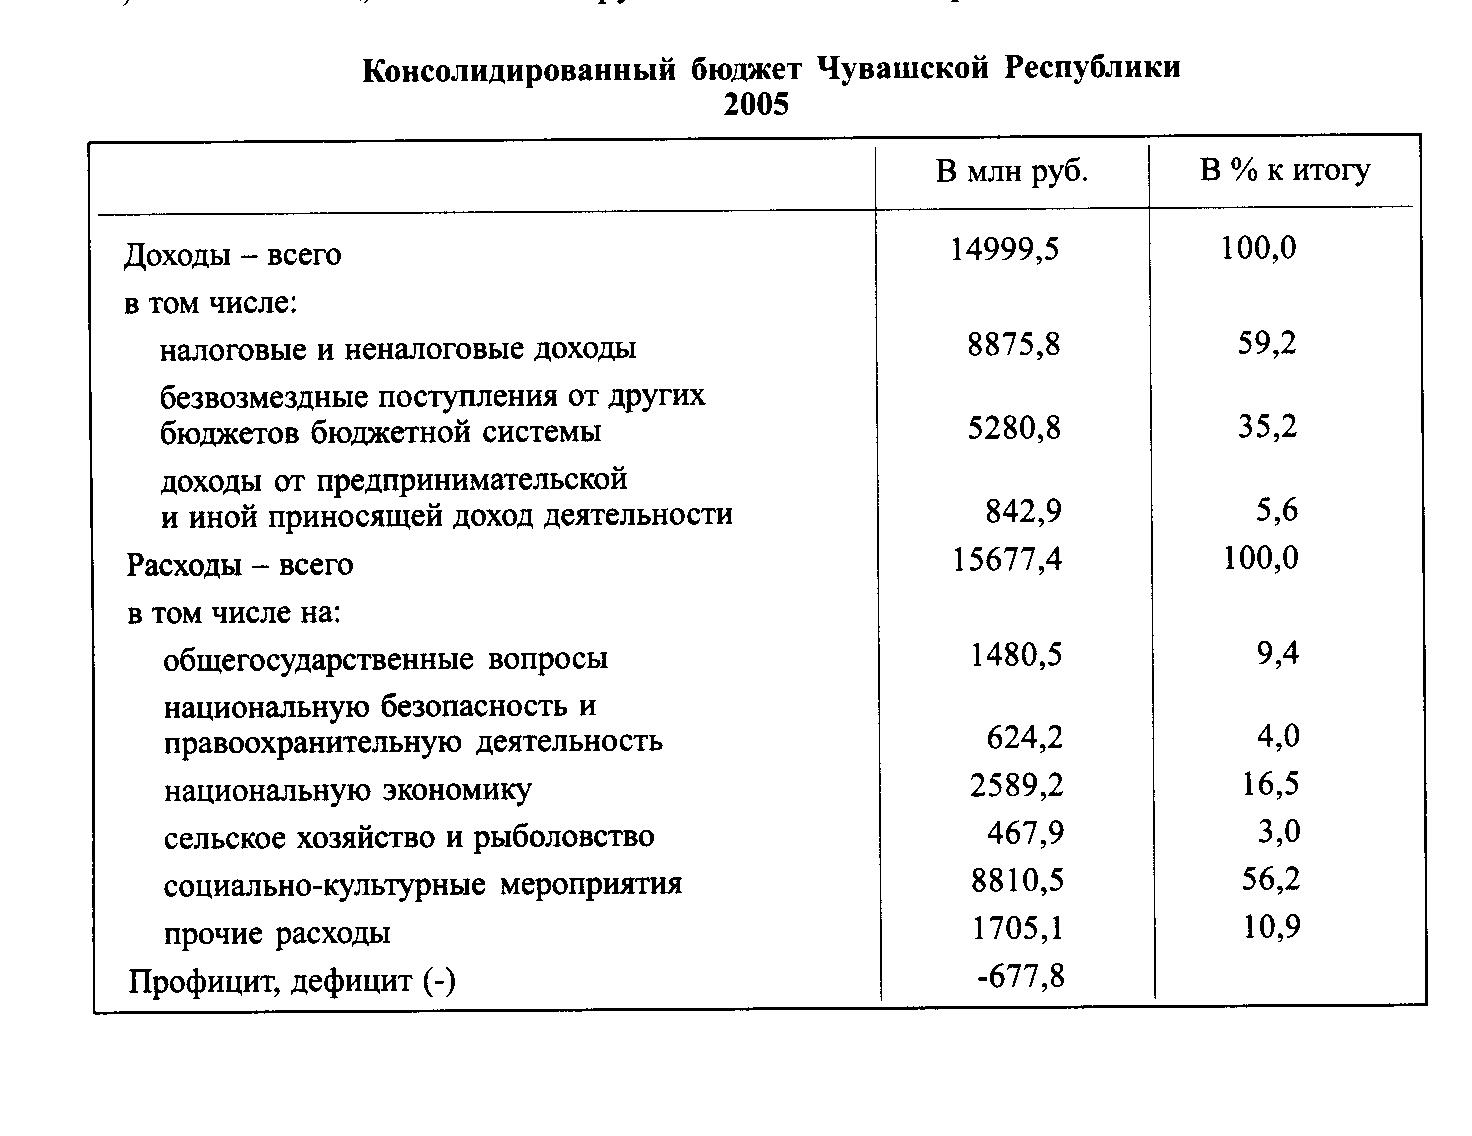 "Консолидированный бюджет Чувашской Республики 2005."